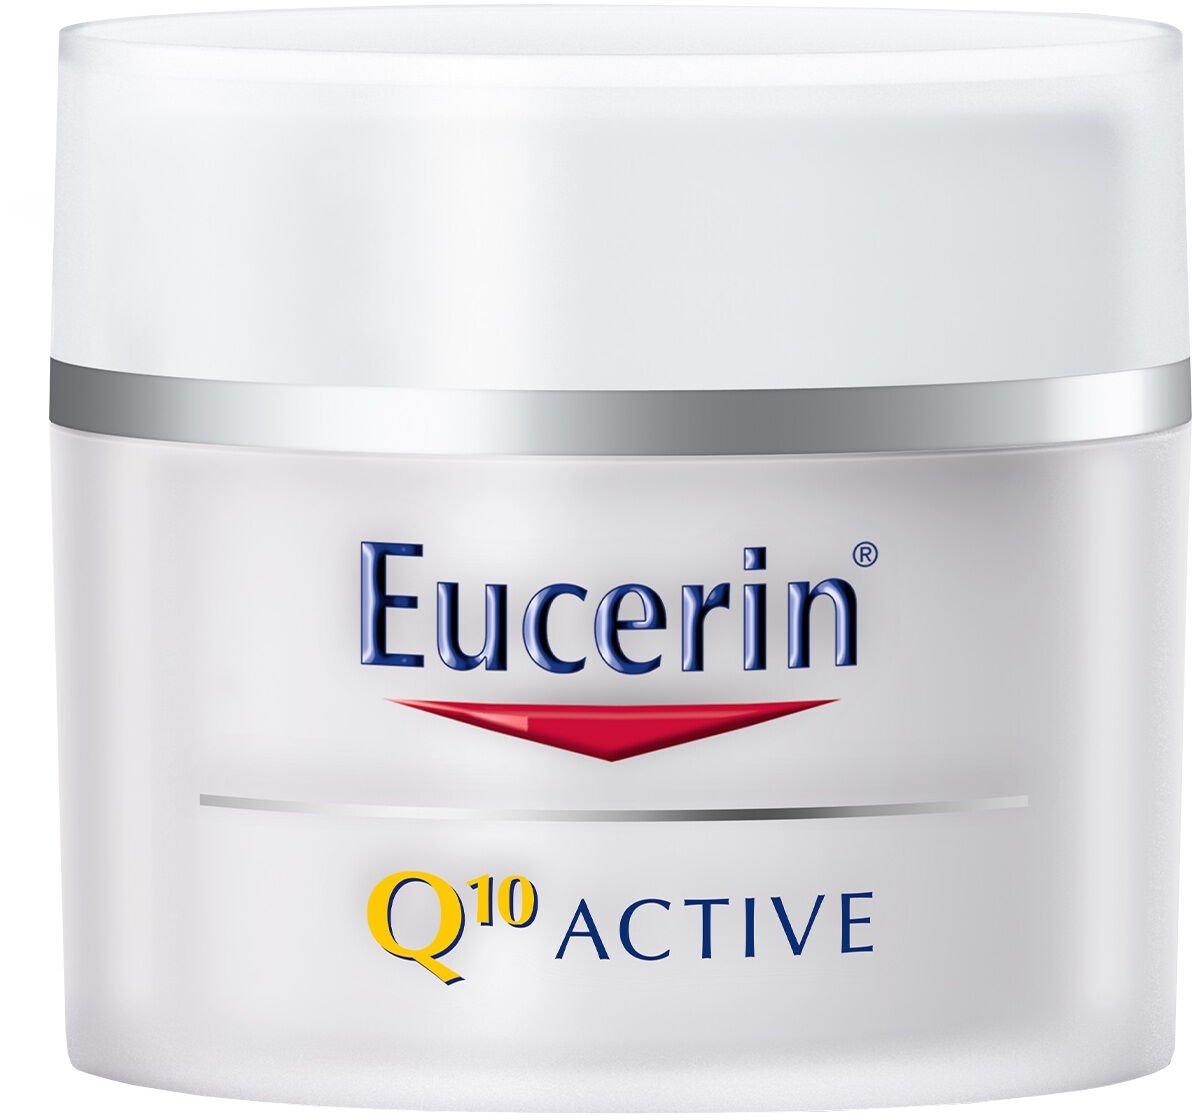 Eucerin Q10 ACTIVE denný krém proti vráskam vyhladzujúci na citlivú pokožku 50 ml